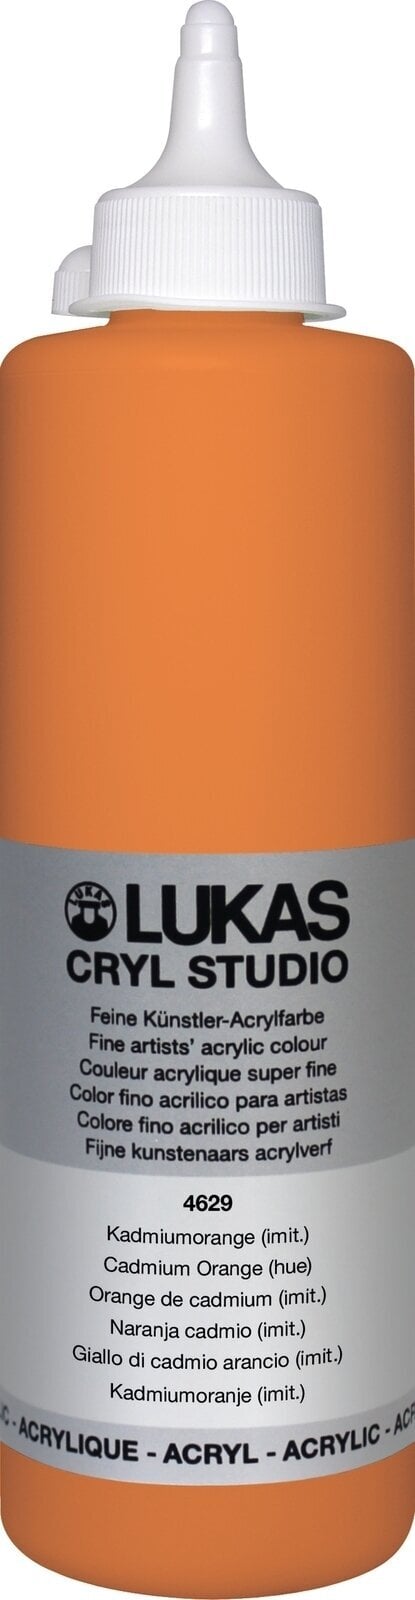 Acrylverf Lukas Cryl Studio Plastic Bottle Acrylverf Cadmium Orange Hue 500 ml 1 stuk